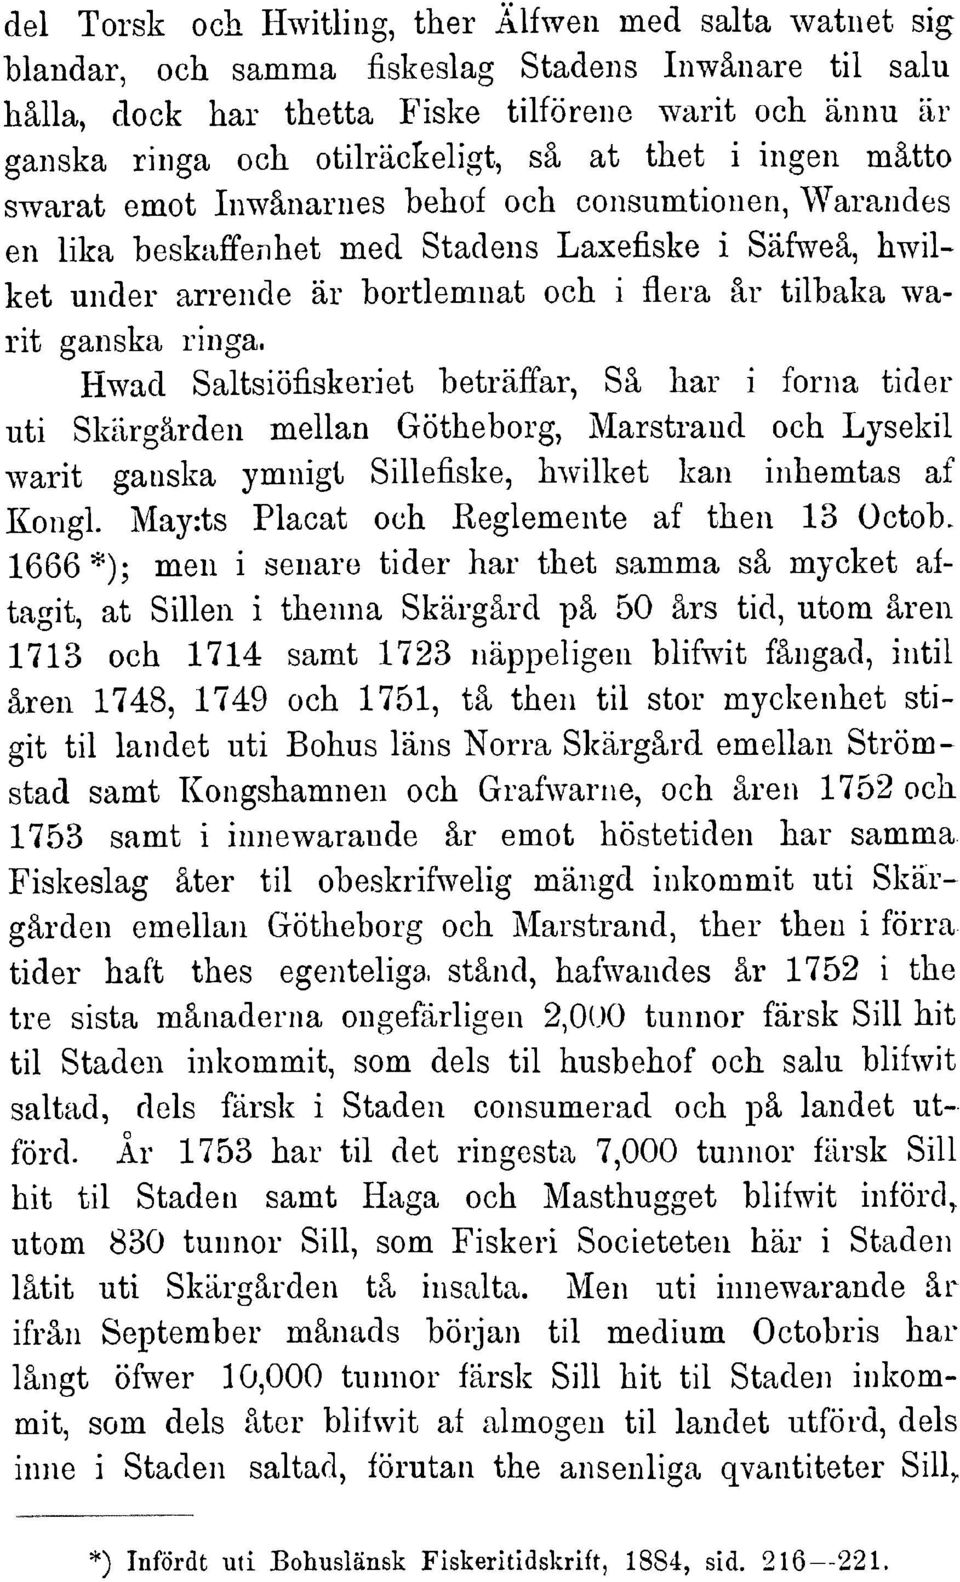 ganska ringa. Hwad Saltsiöfiskeriet beträffar,sä har i forna tider uti Skärgärden mellan Götheborg, Marstrand och Lysekil warit ganska ymnigt Sillefiske,hwilket kan inhemtas af Kongl.